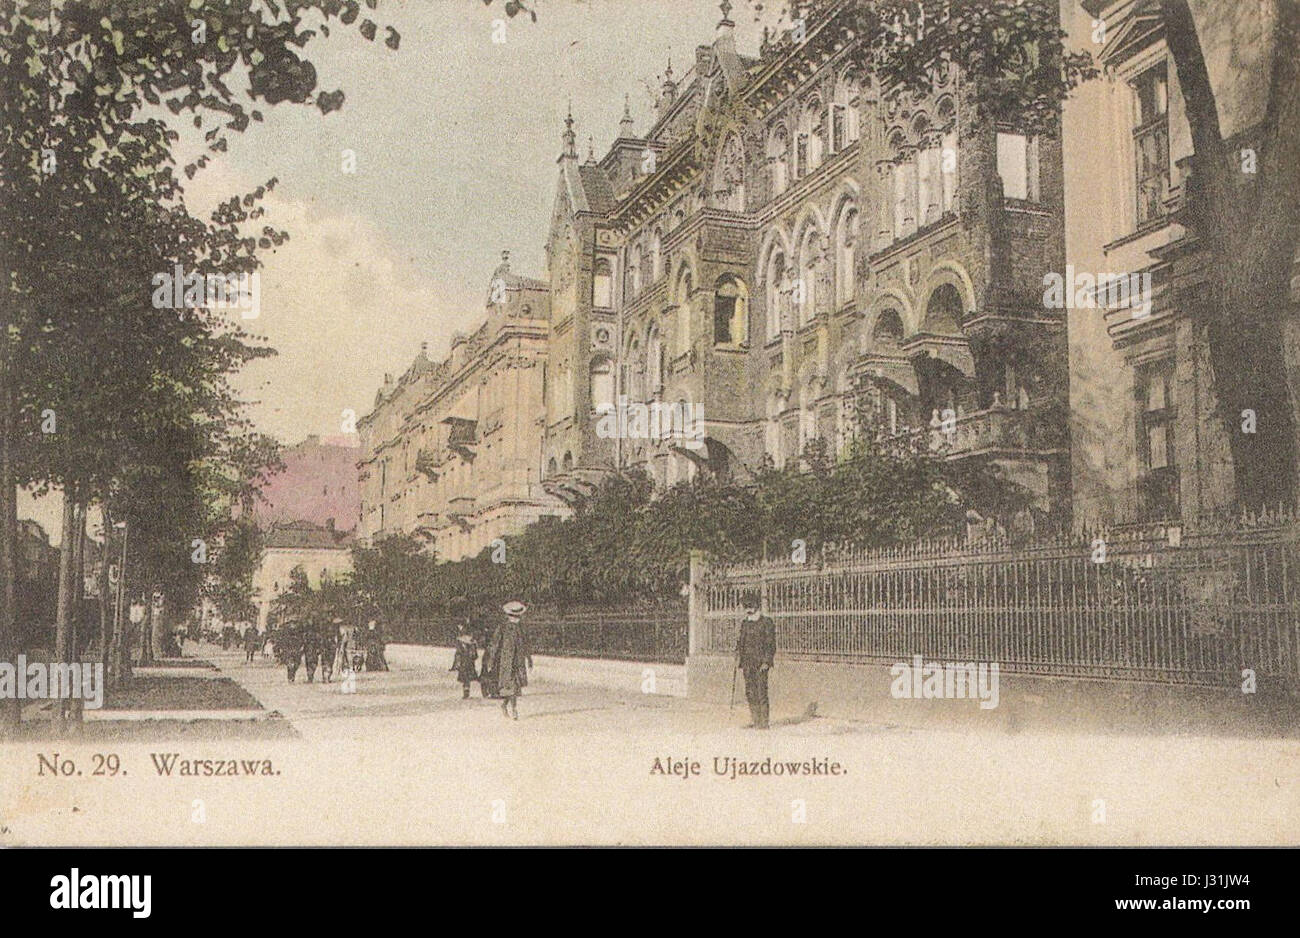 Aleje Weg w Warszawie 1908 Stockfoto